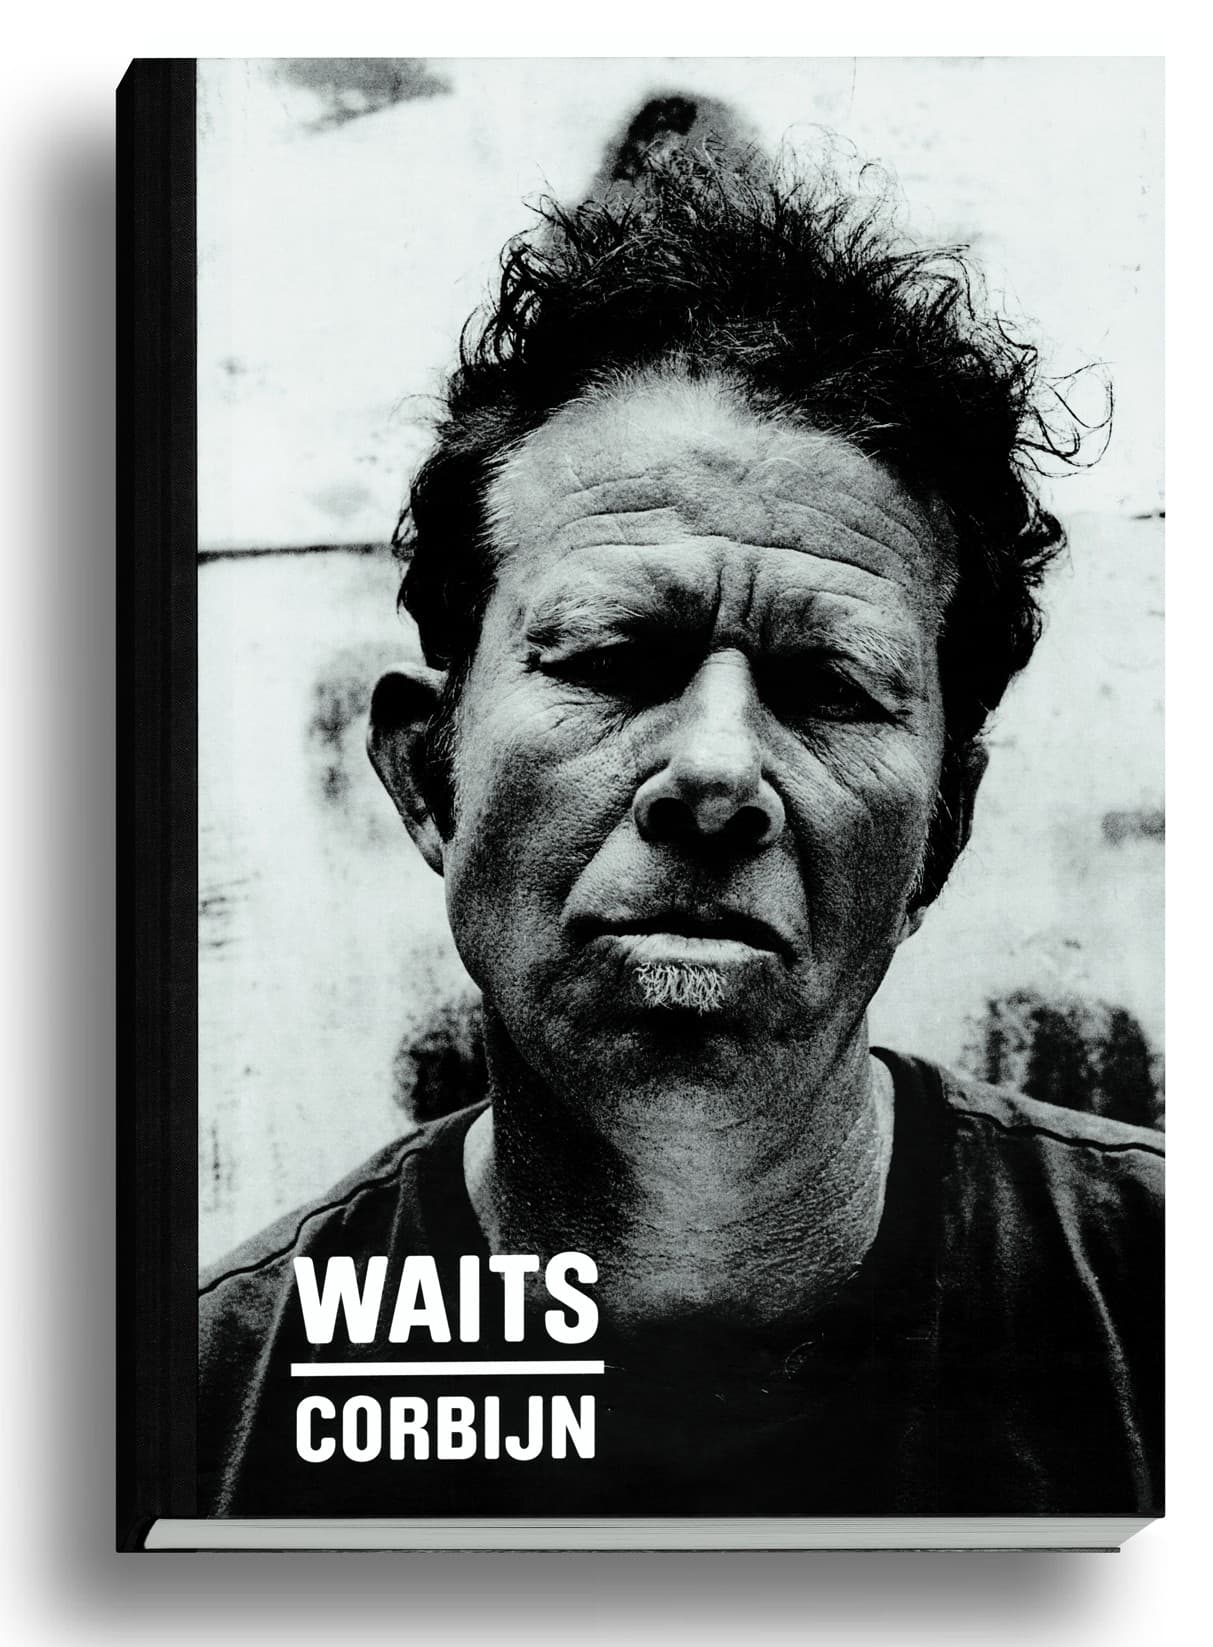 Különleges fotóalbumot ad ki Tom Waits